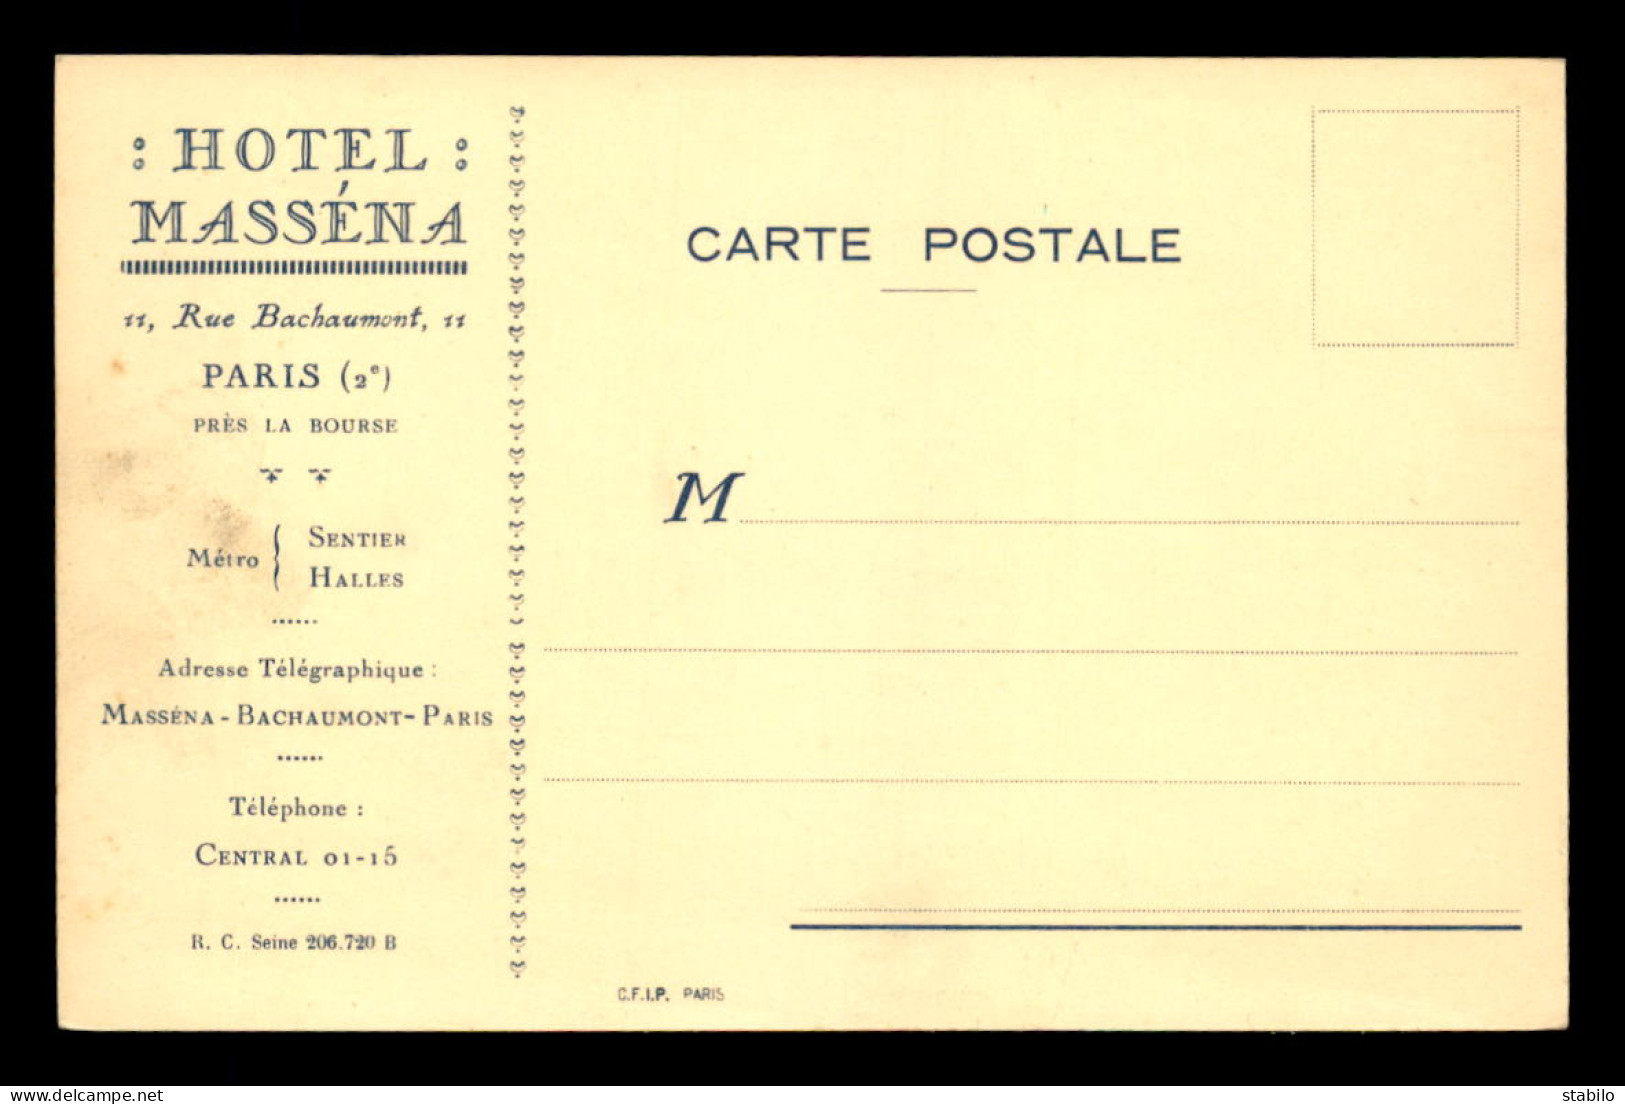 75 - PARIS 2EME - HOTEL MASSENA, 11 RUE BACHAUMONT - CARTE DE SERVICE - Paris (02)